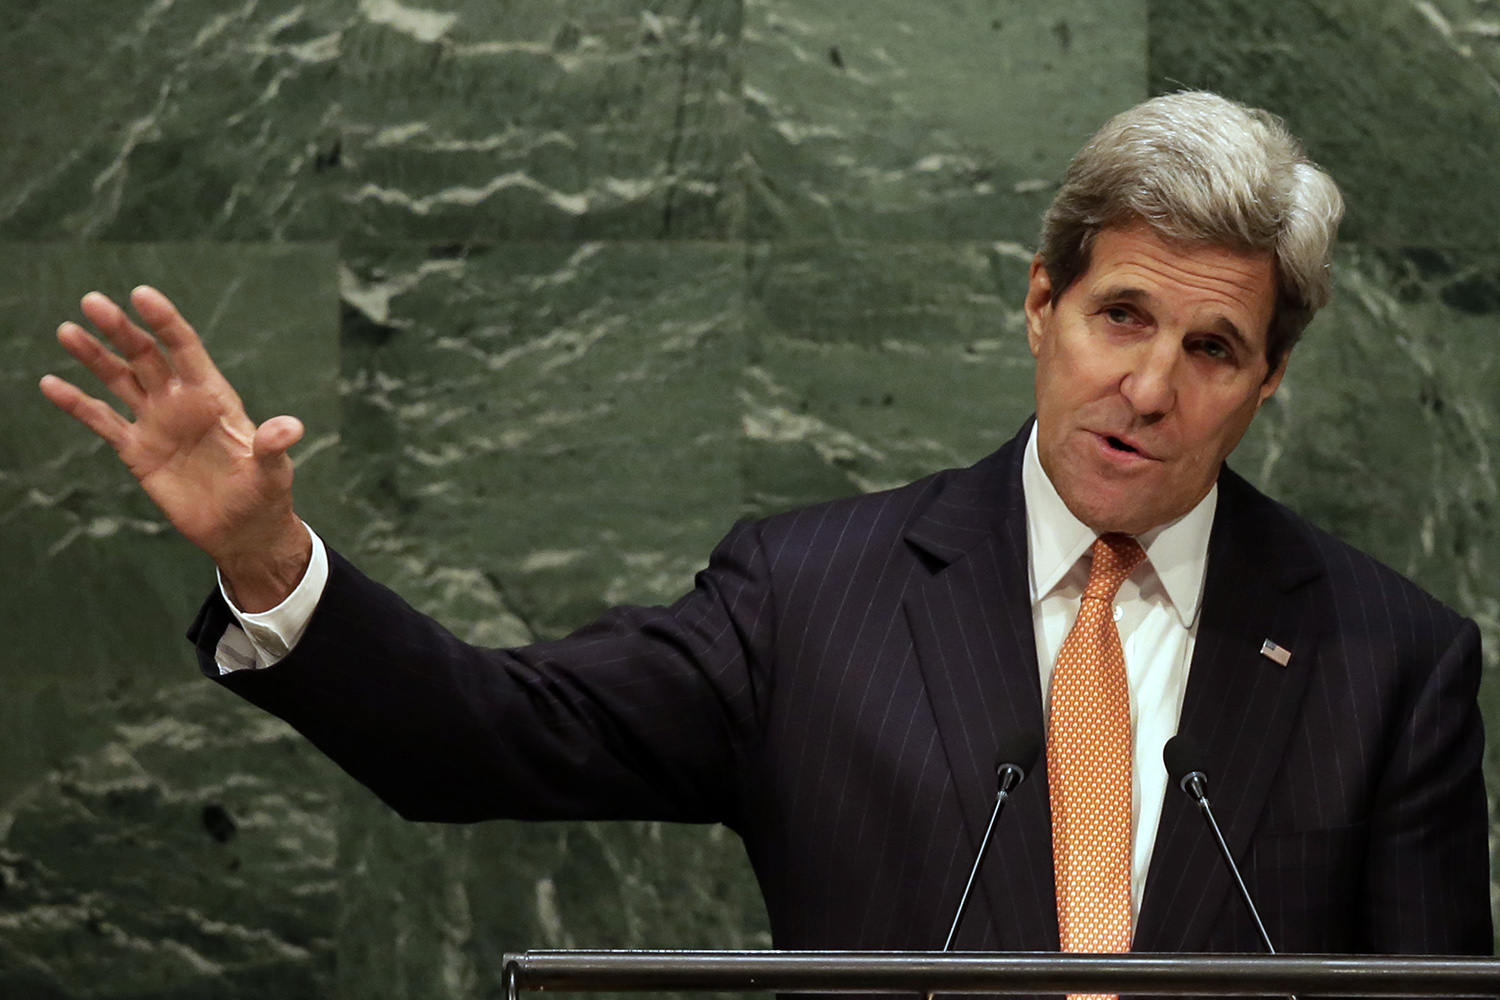 Kerry promete acelerar el desmantelamiento de cabezas nucleares